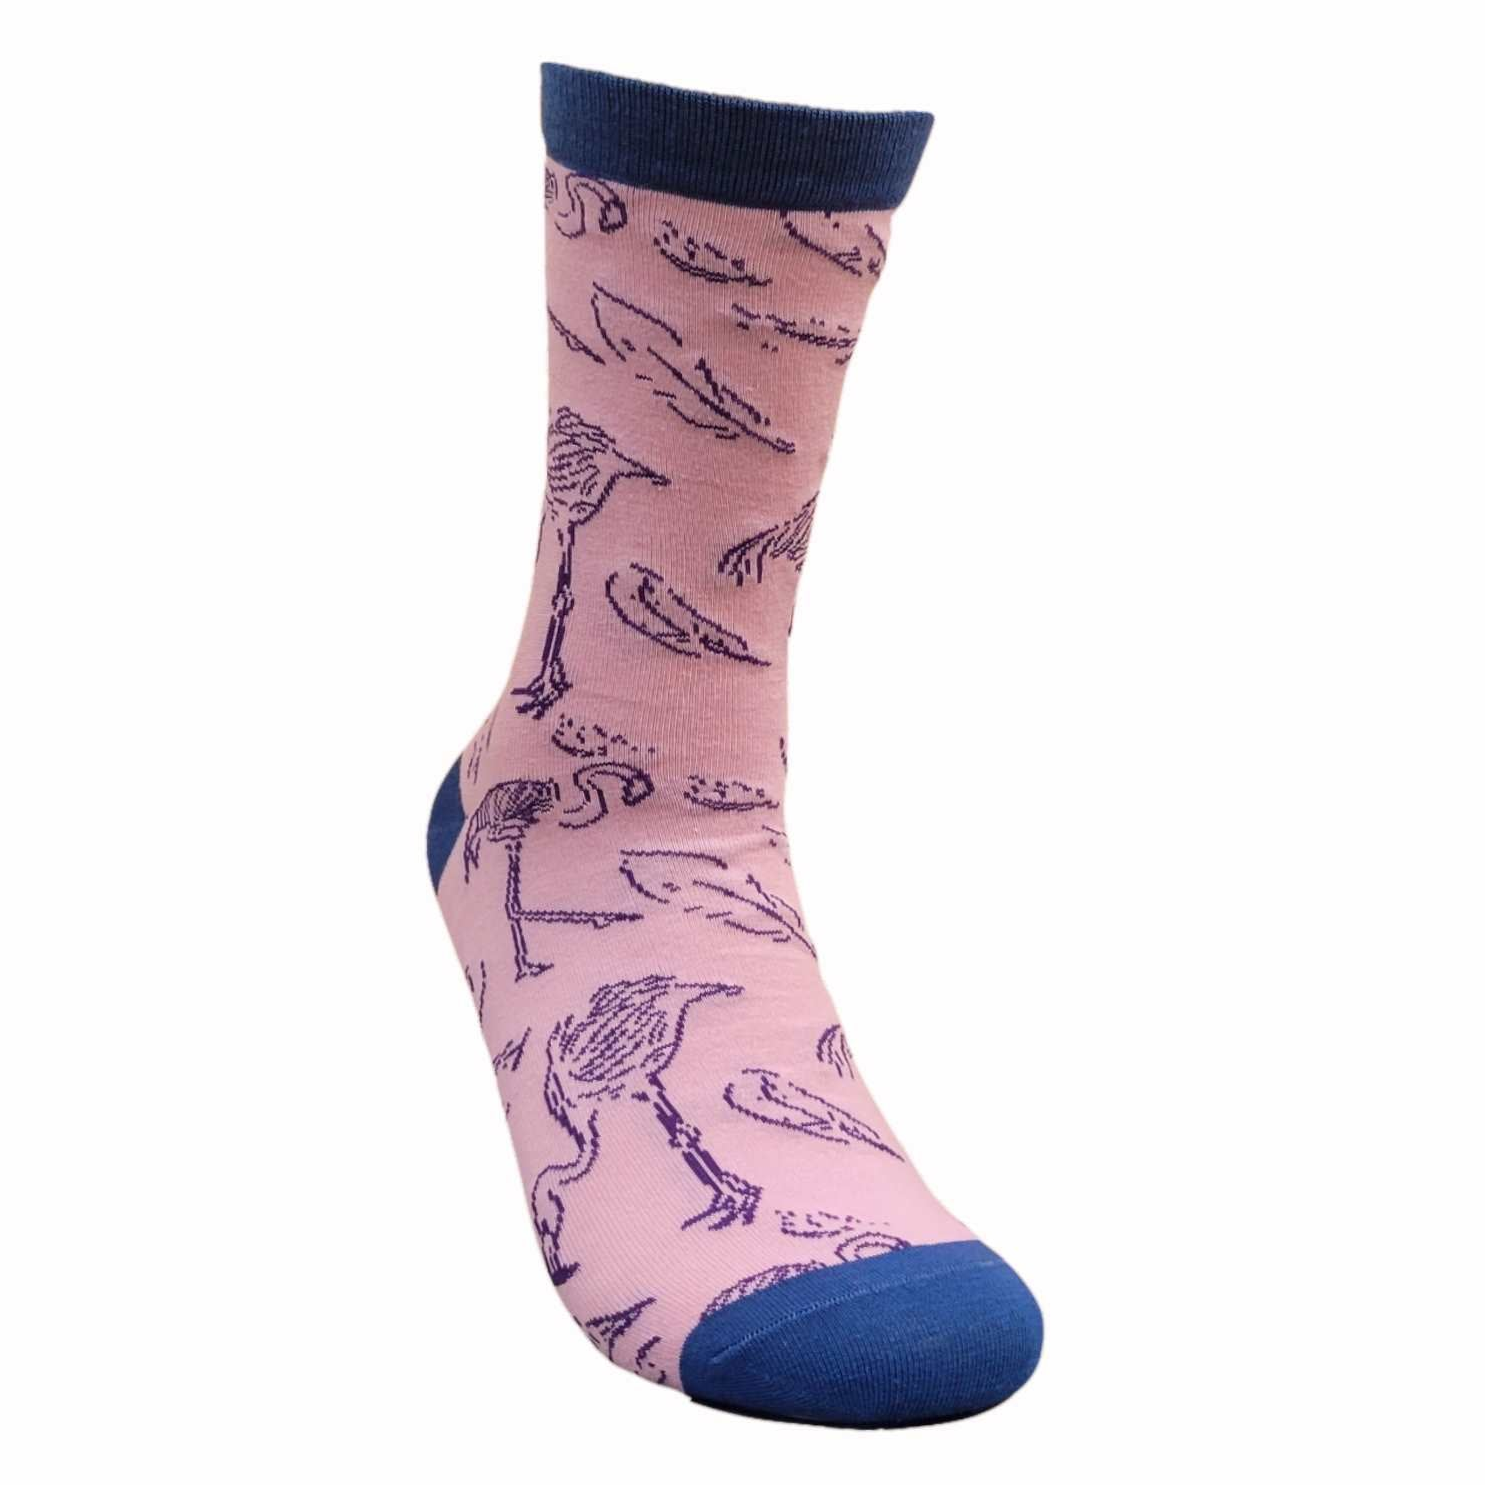 Flamingo Pattern Socks from the Sock Panda (Adult Medium)